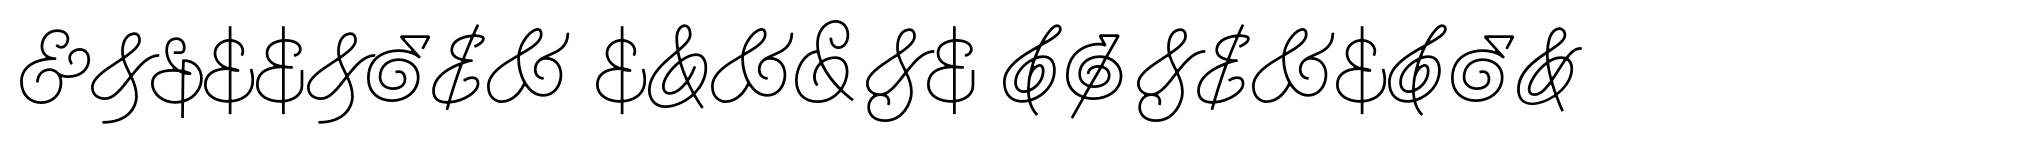 Houstoner Script Ampersand image